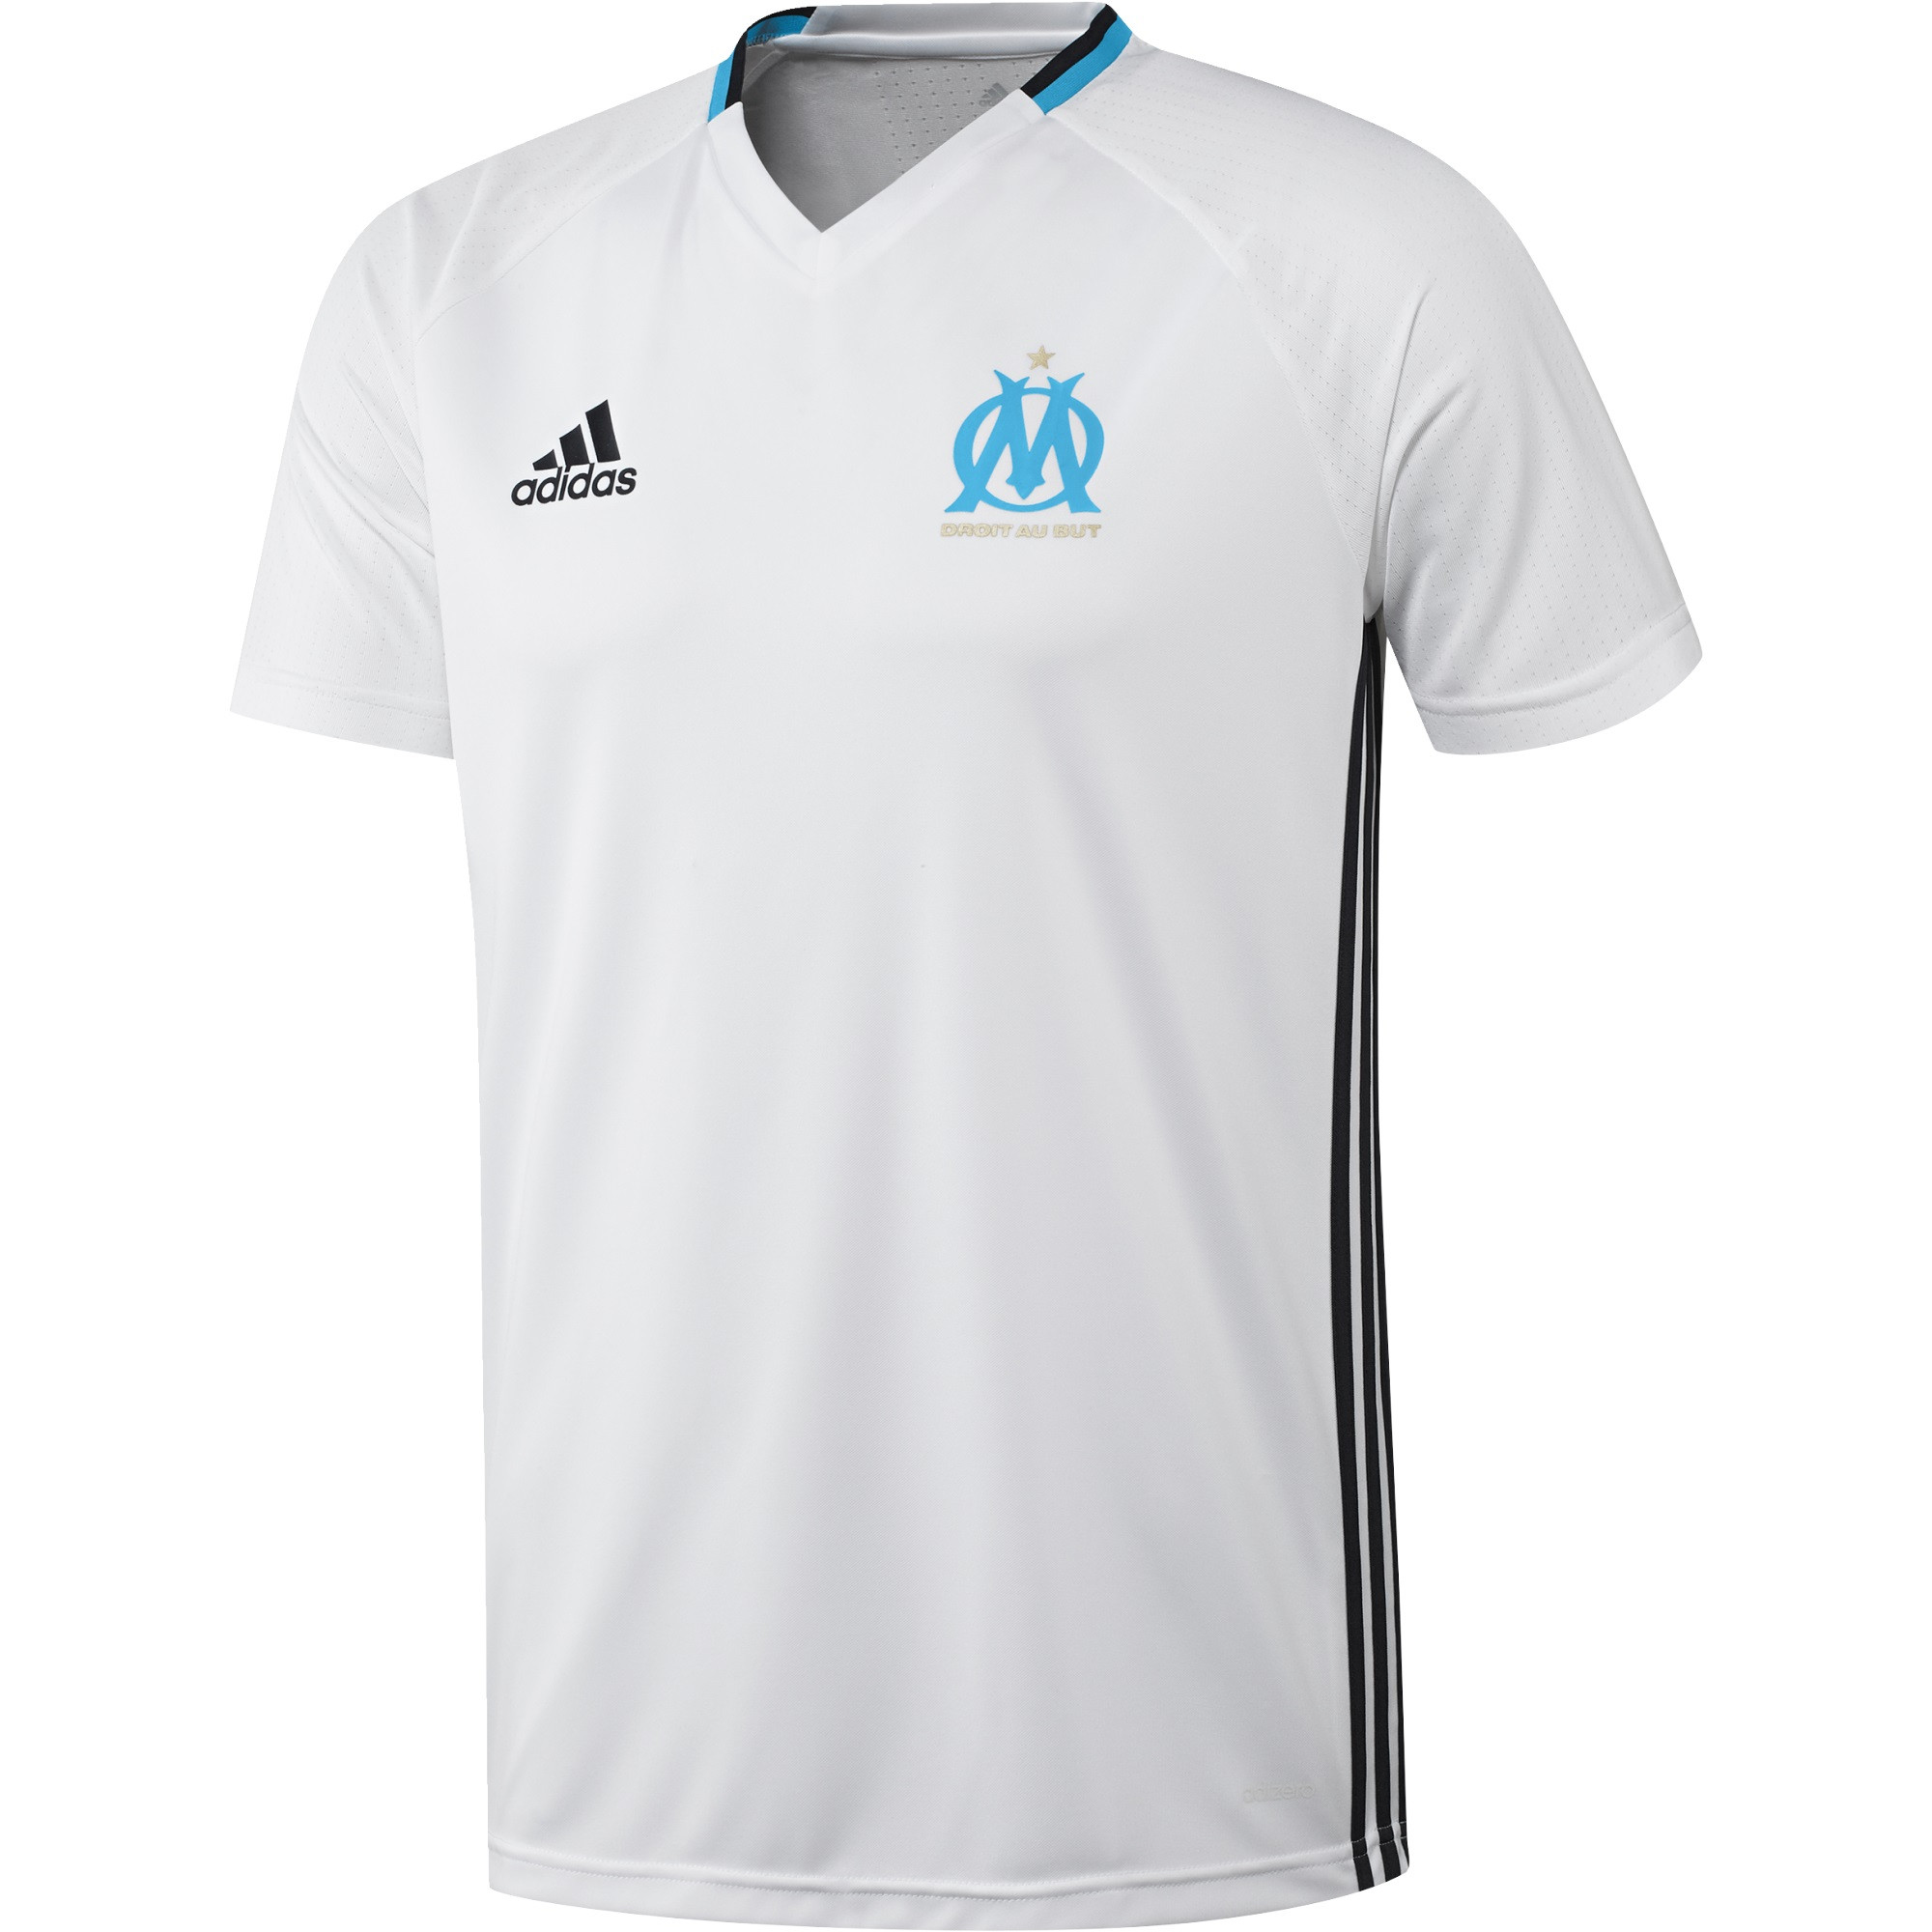 maillot entrainement Olympique de Marseille noir